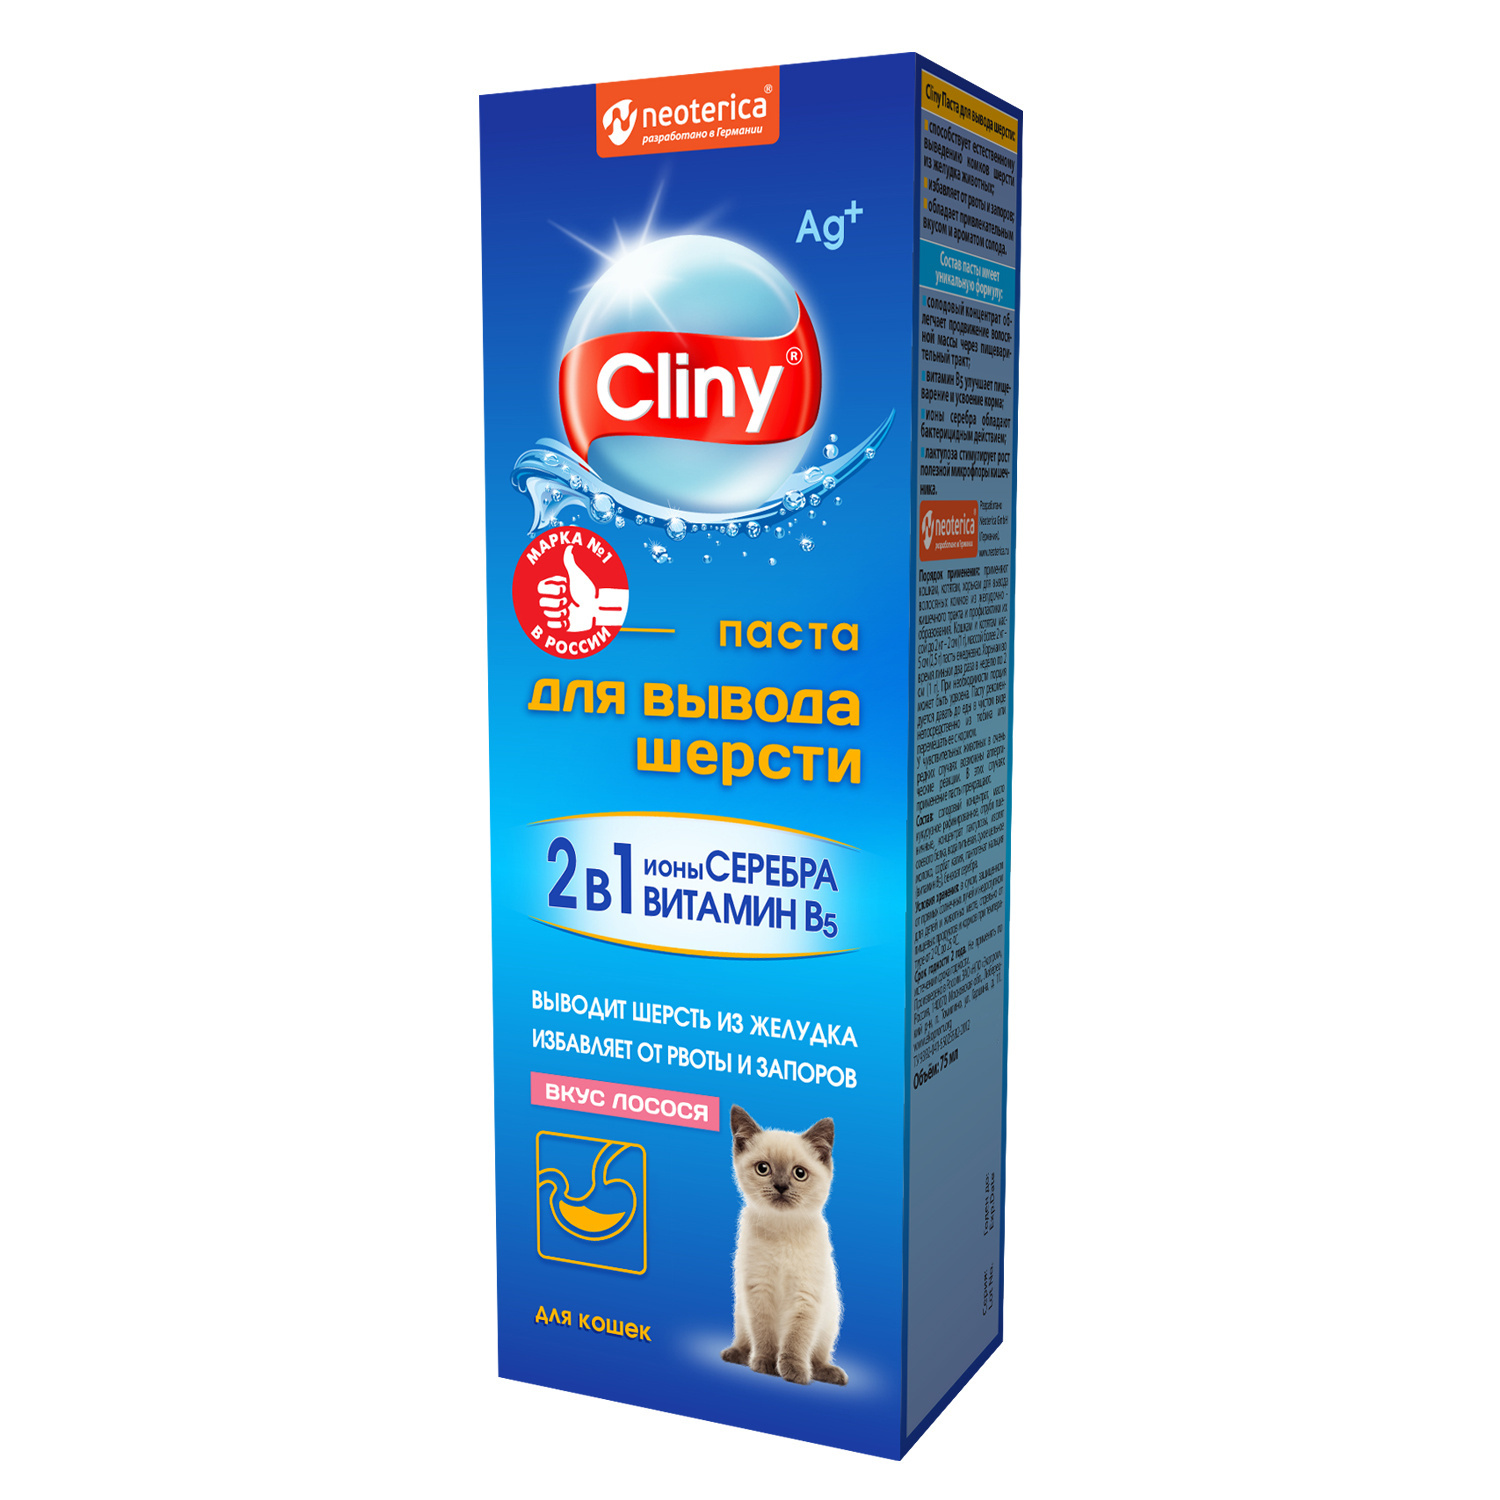 Cliny Cliny паста для вывода шерсти со вкусом лосося (75 мл) паста для кошек экопром cliny для вывода шерсти со вкусом лосося 75мл